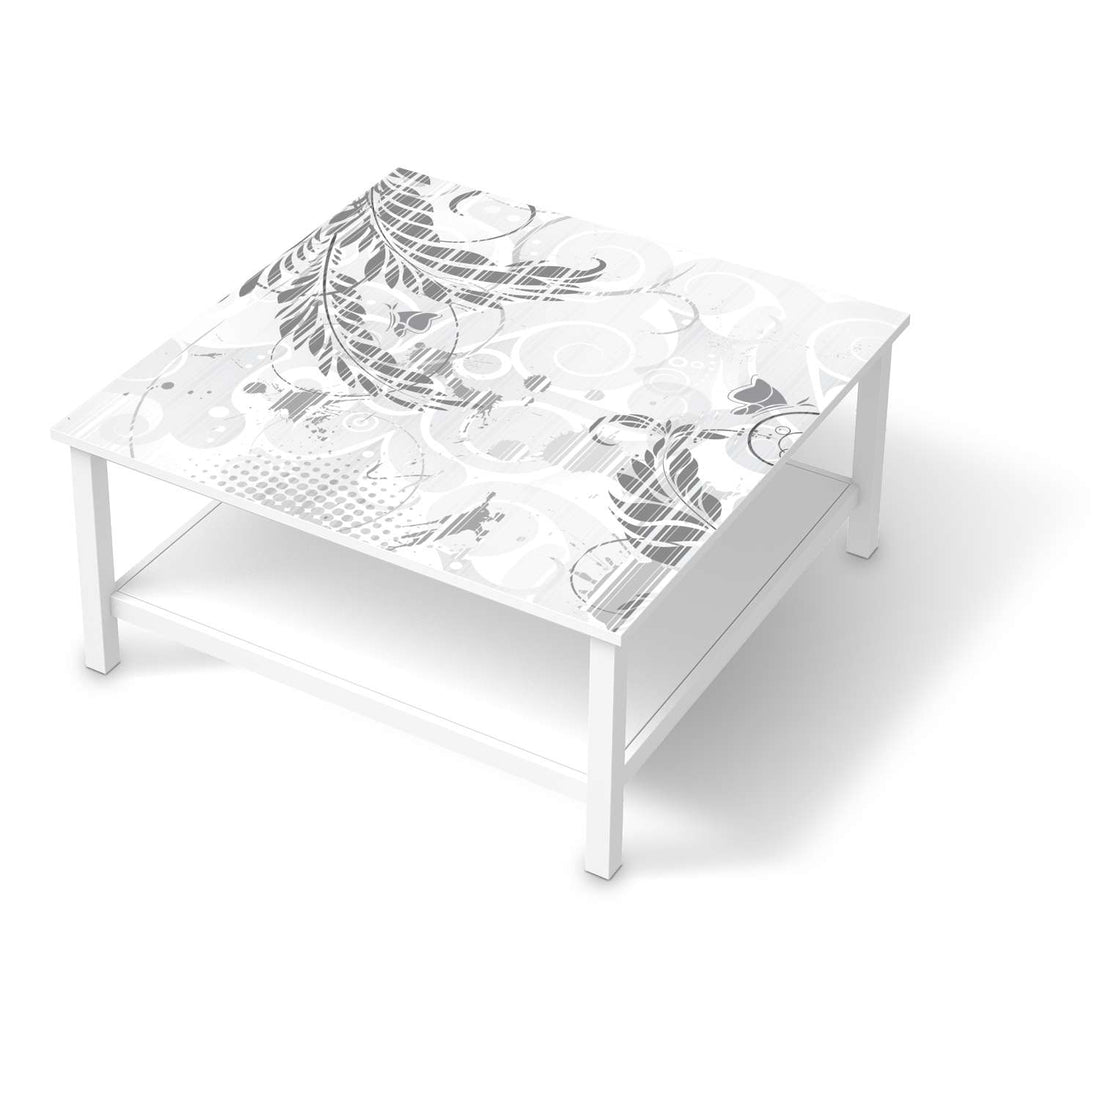 Klebefolie für Möbel Florals Plain 2 - IKEA Hemnes Couchtisch 90x90 cm  - weiss